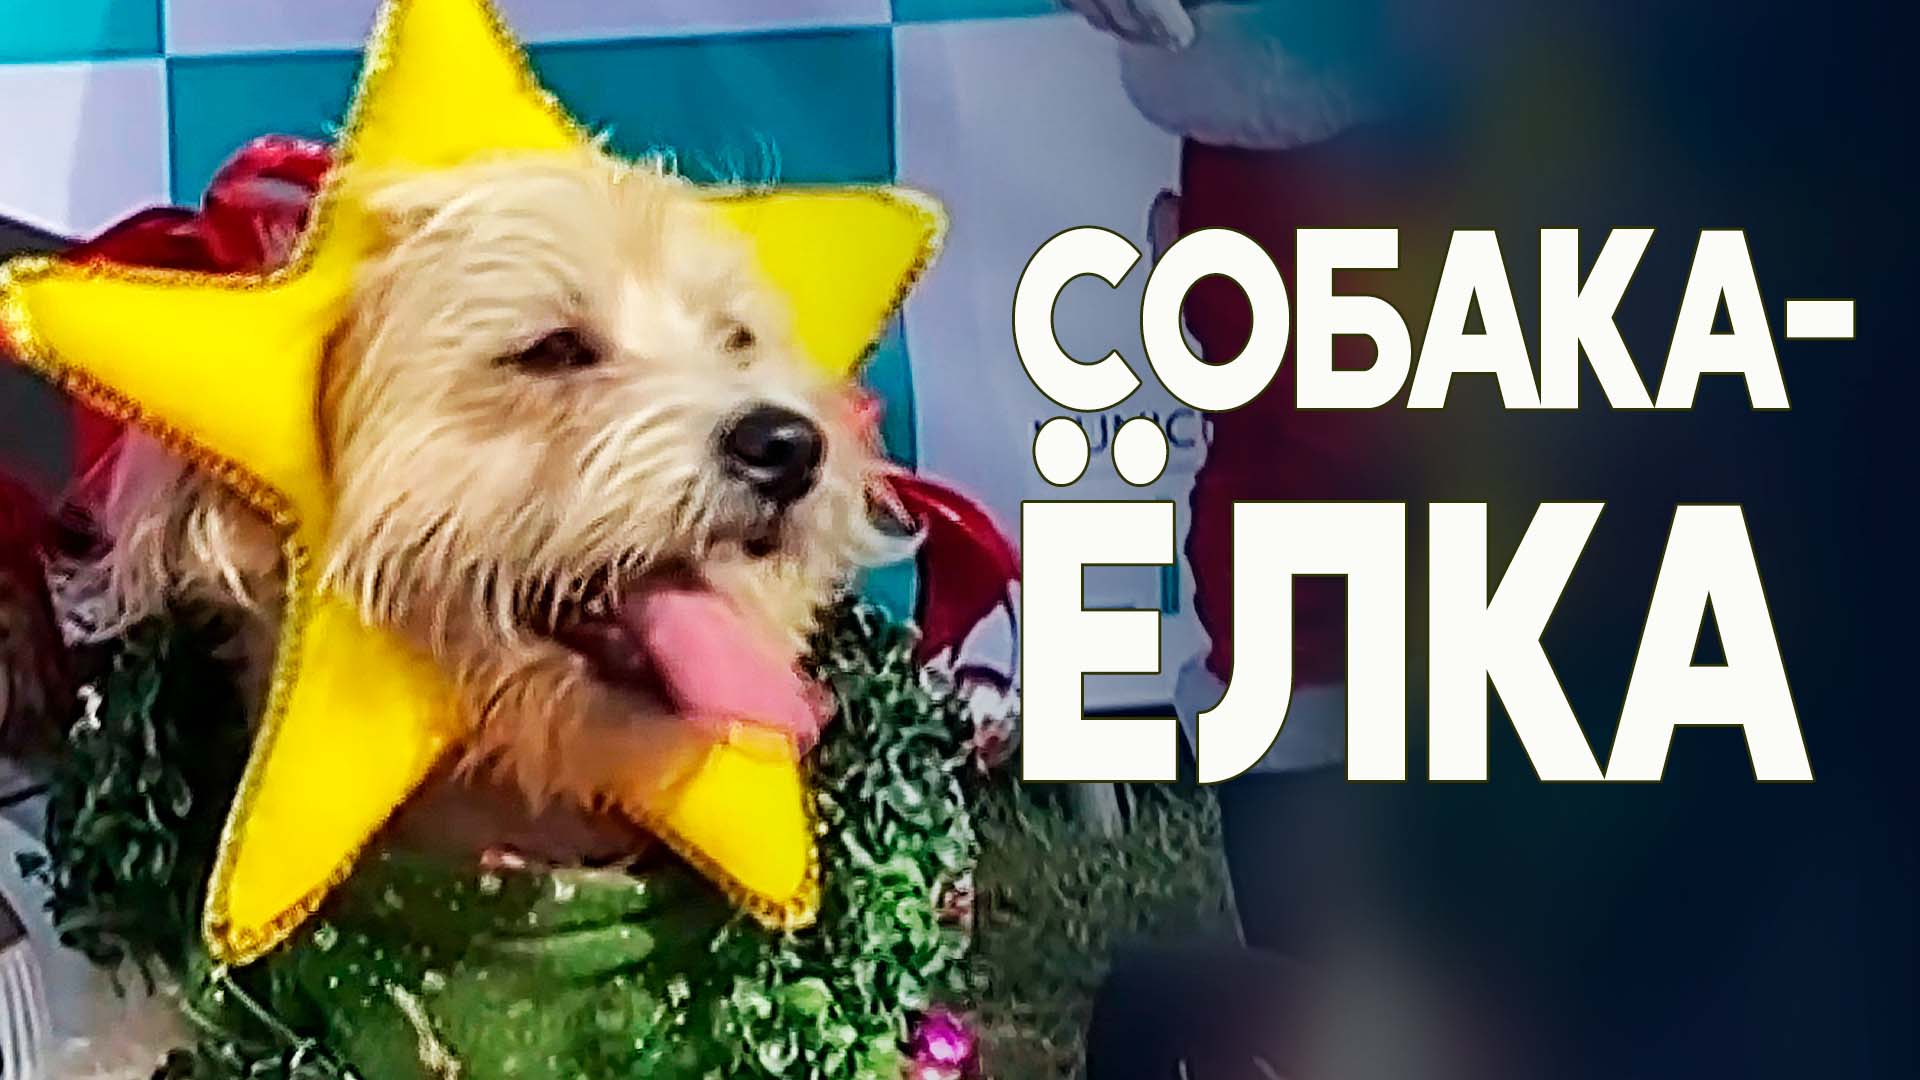 Лучший рождественский наряд: конкурс для собак устроили в Перу